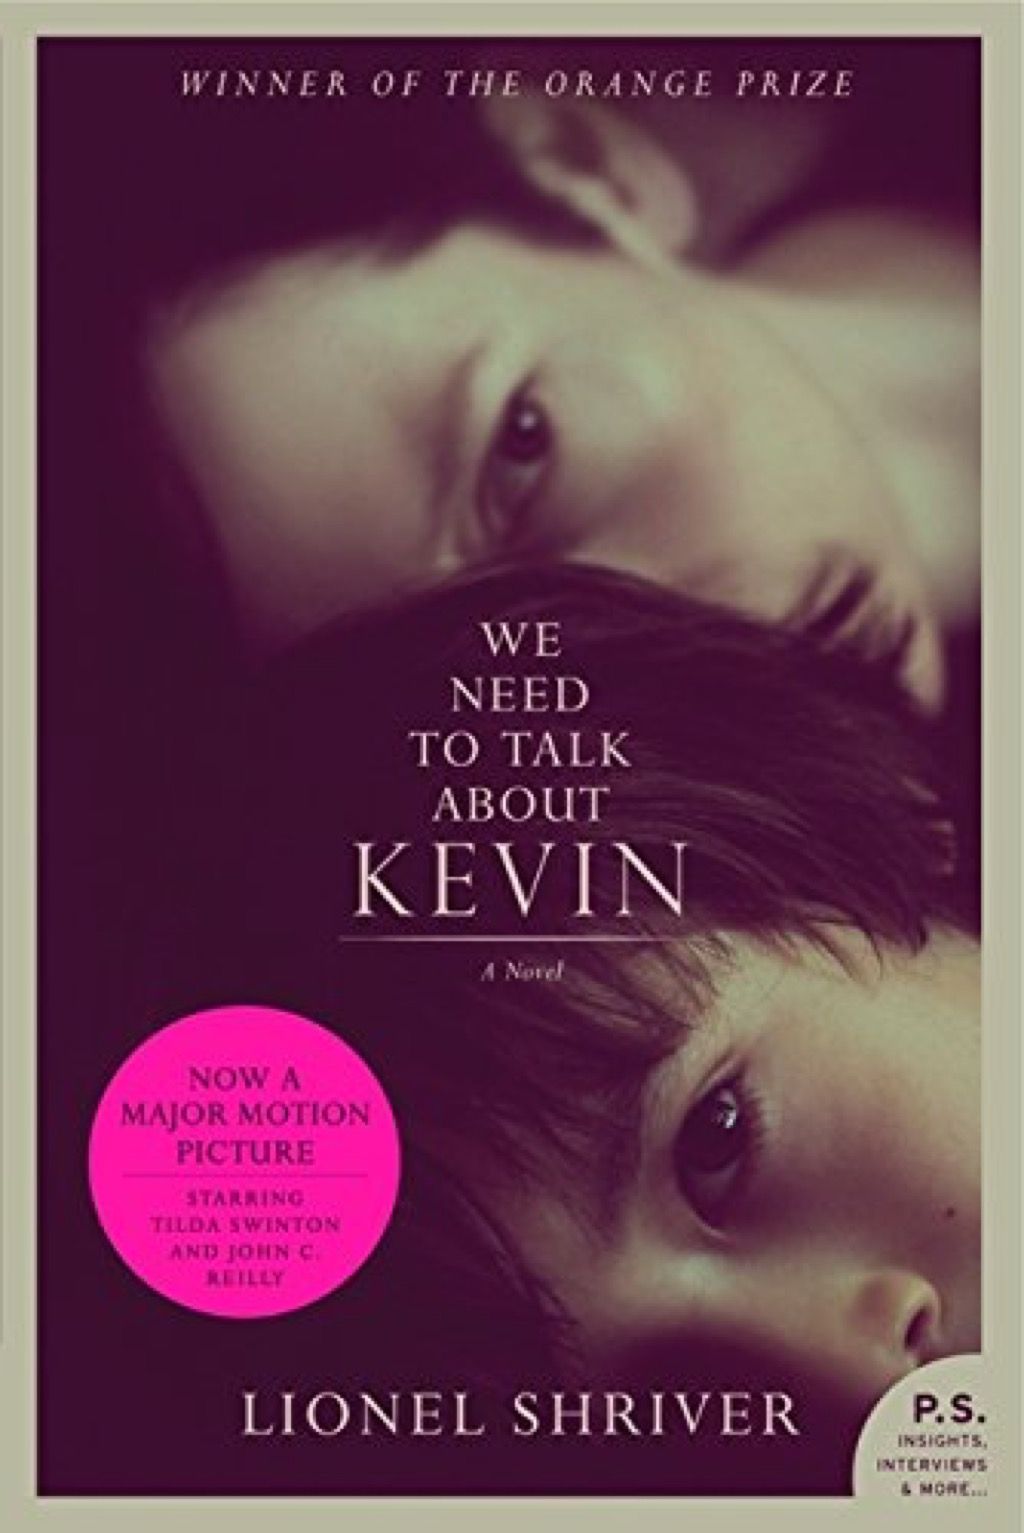 mums jārunā par Kevina grāmatām, kuras katrai sievietei vajadzētu izlasīt 40 gadu vecumā